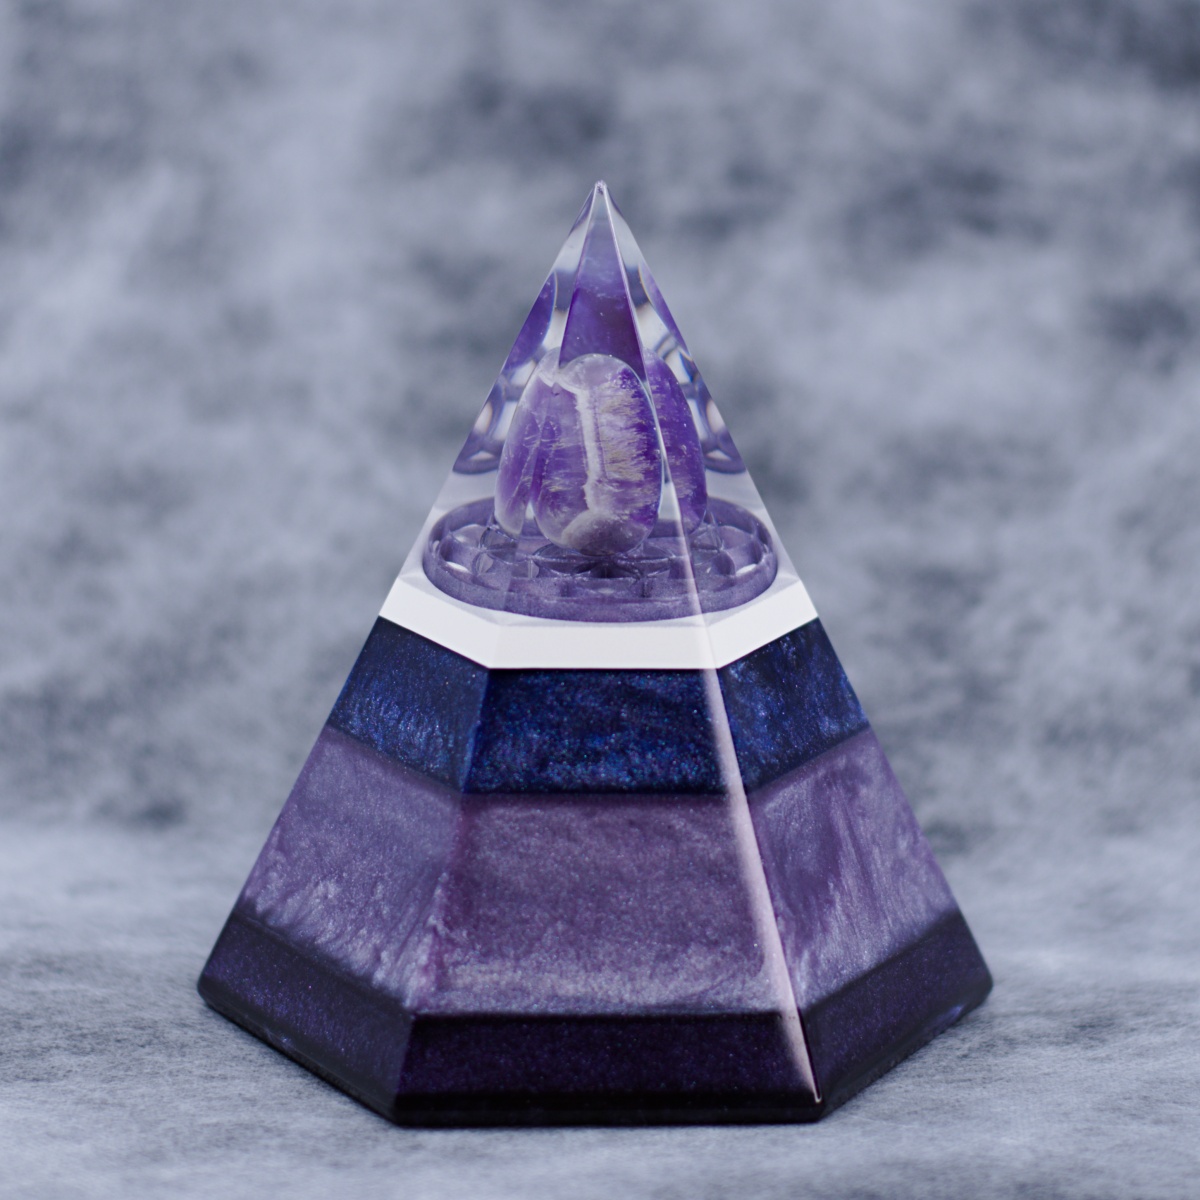 Petkotna orgonit piramida, ametist, cel kristal, pigmentirana